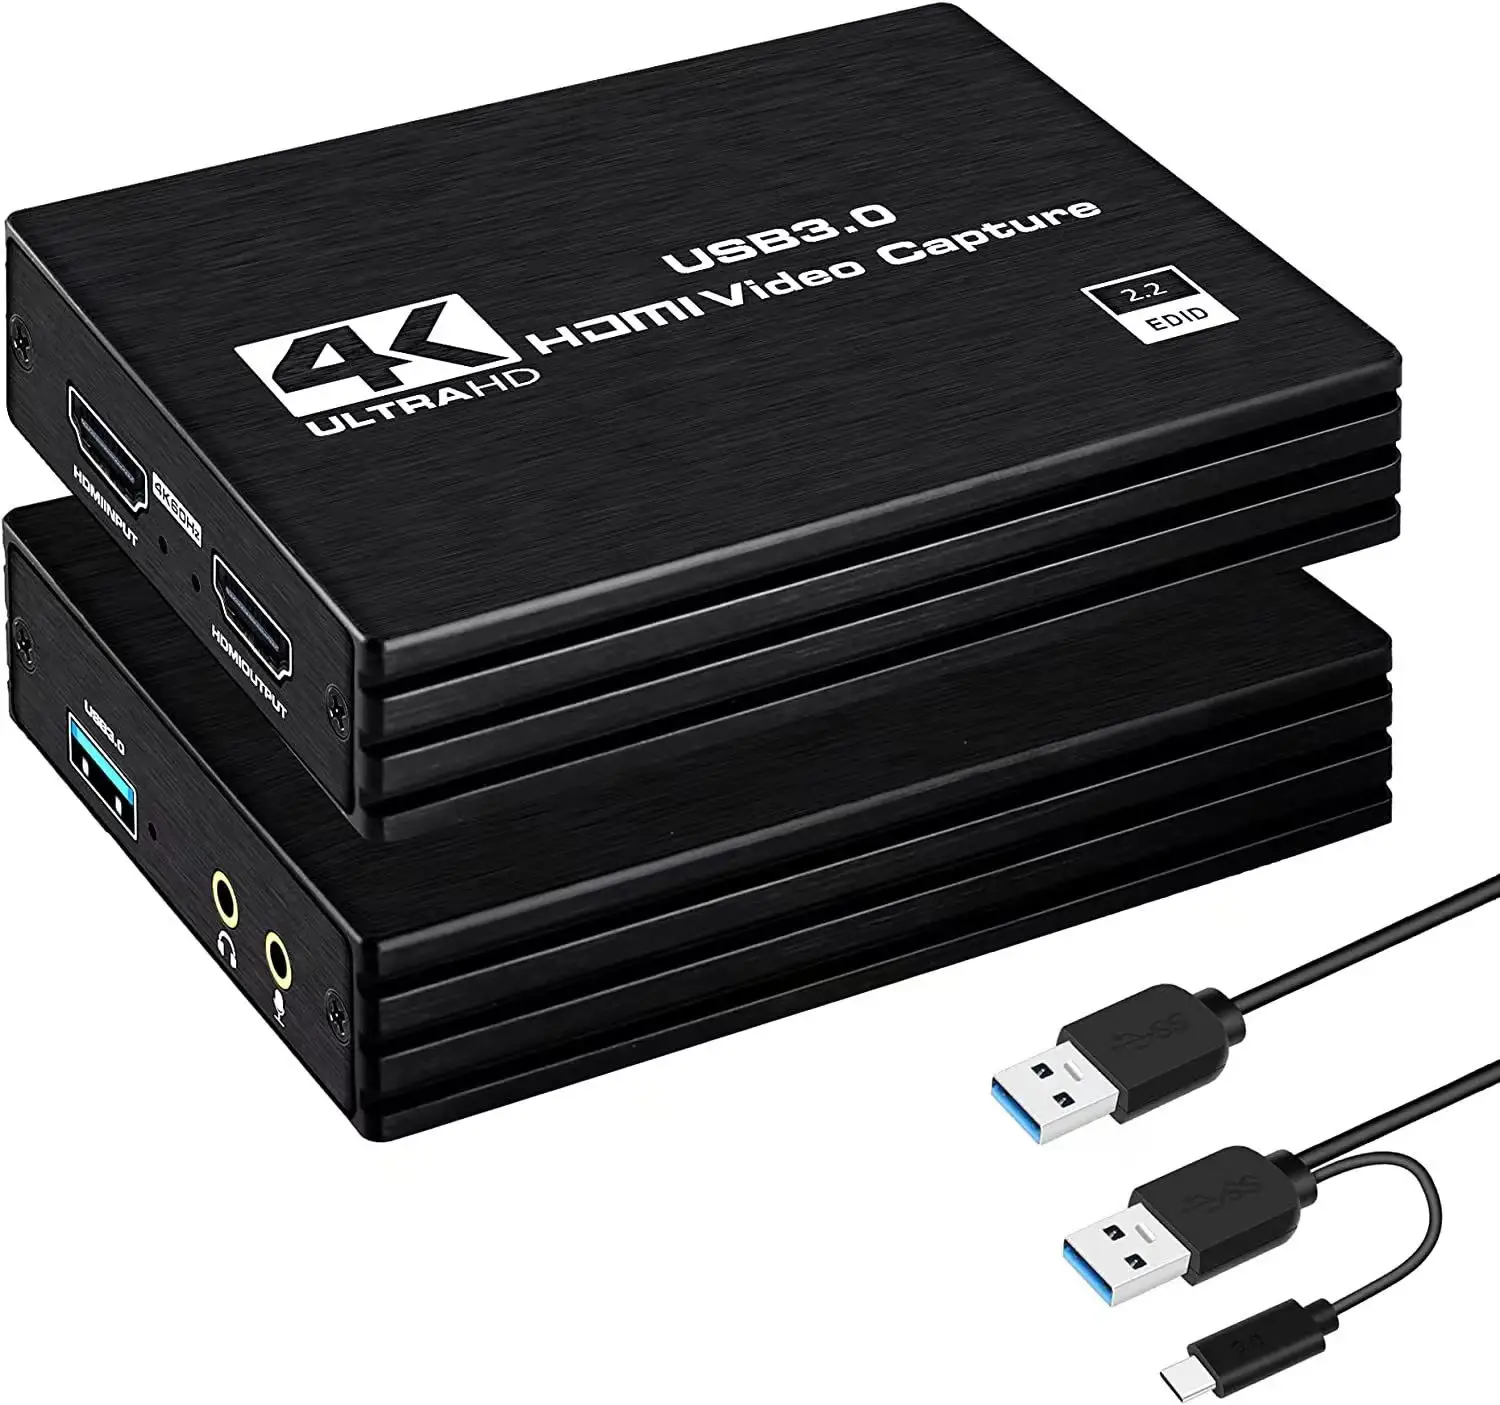 गर्म बिक्री 1080p 60fps लाइव स्ट्रीमिंग के लिए HDMI करने के लिए यूएसबी 3.0 Xbox 360 के लिए 4K वीडियो पर कब्जा कार्ड PS4 wii Nintendo स्विच